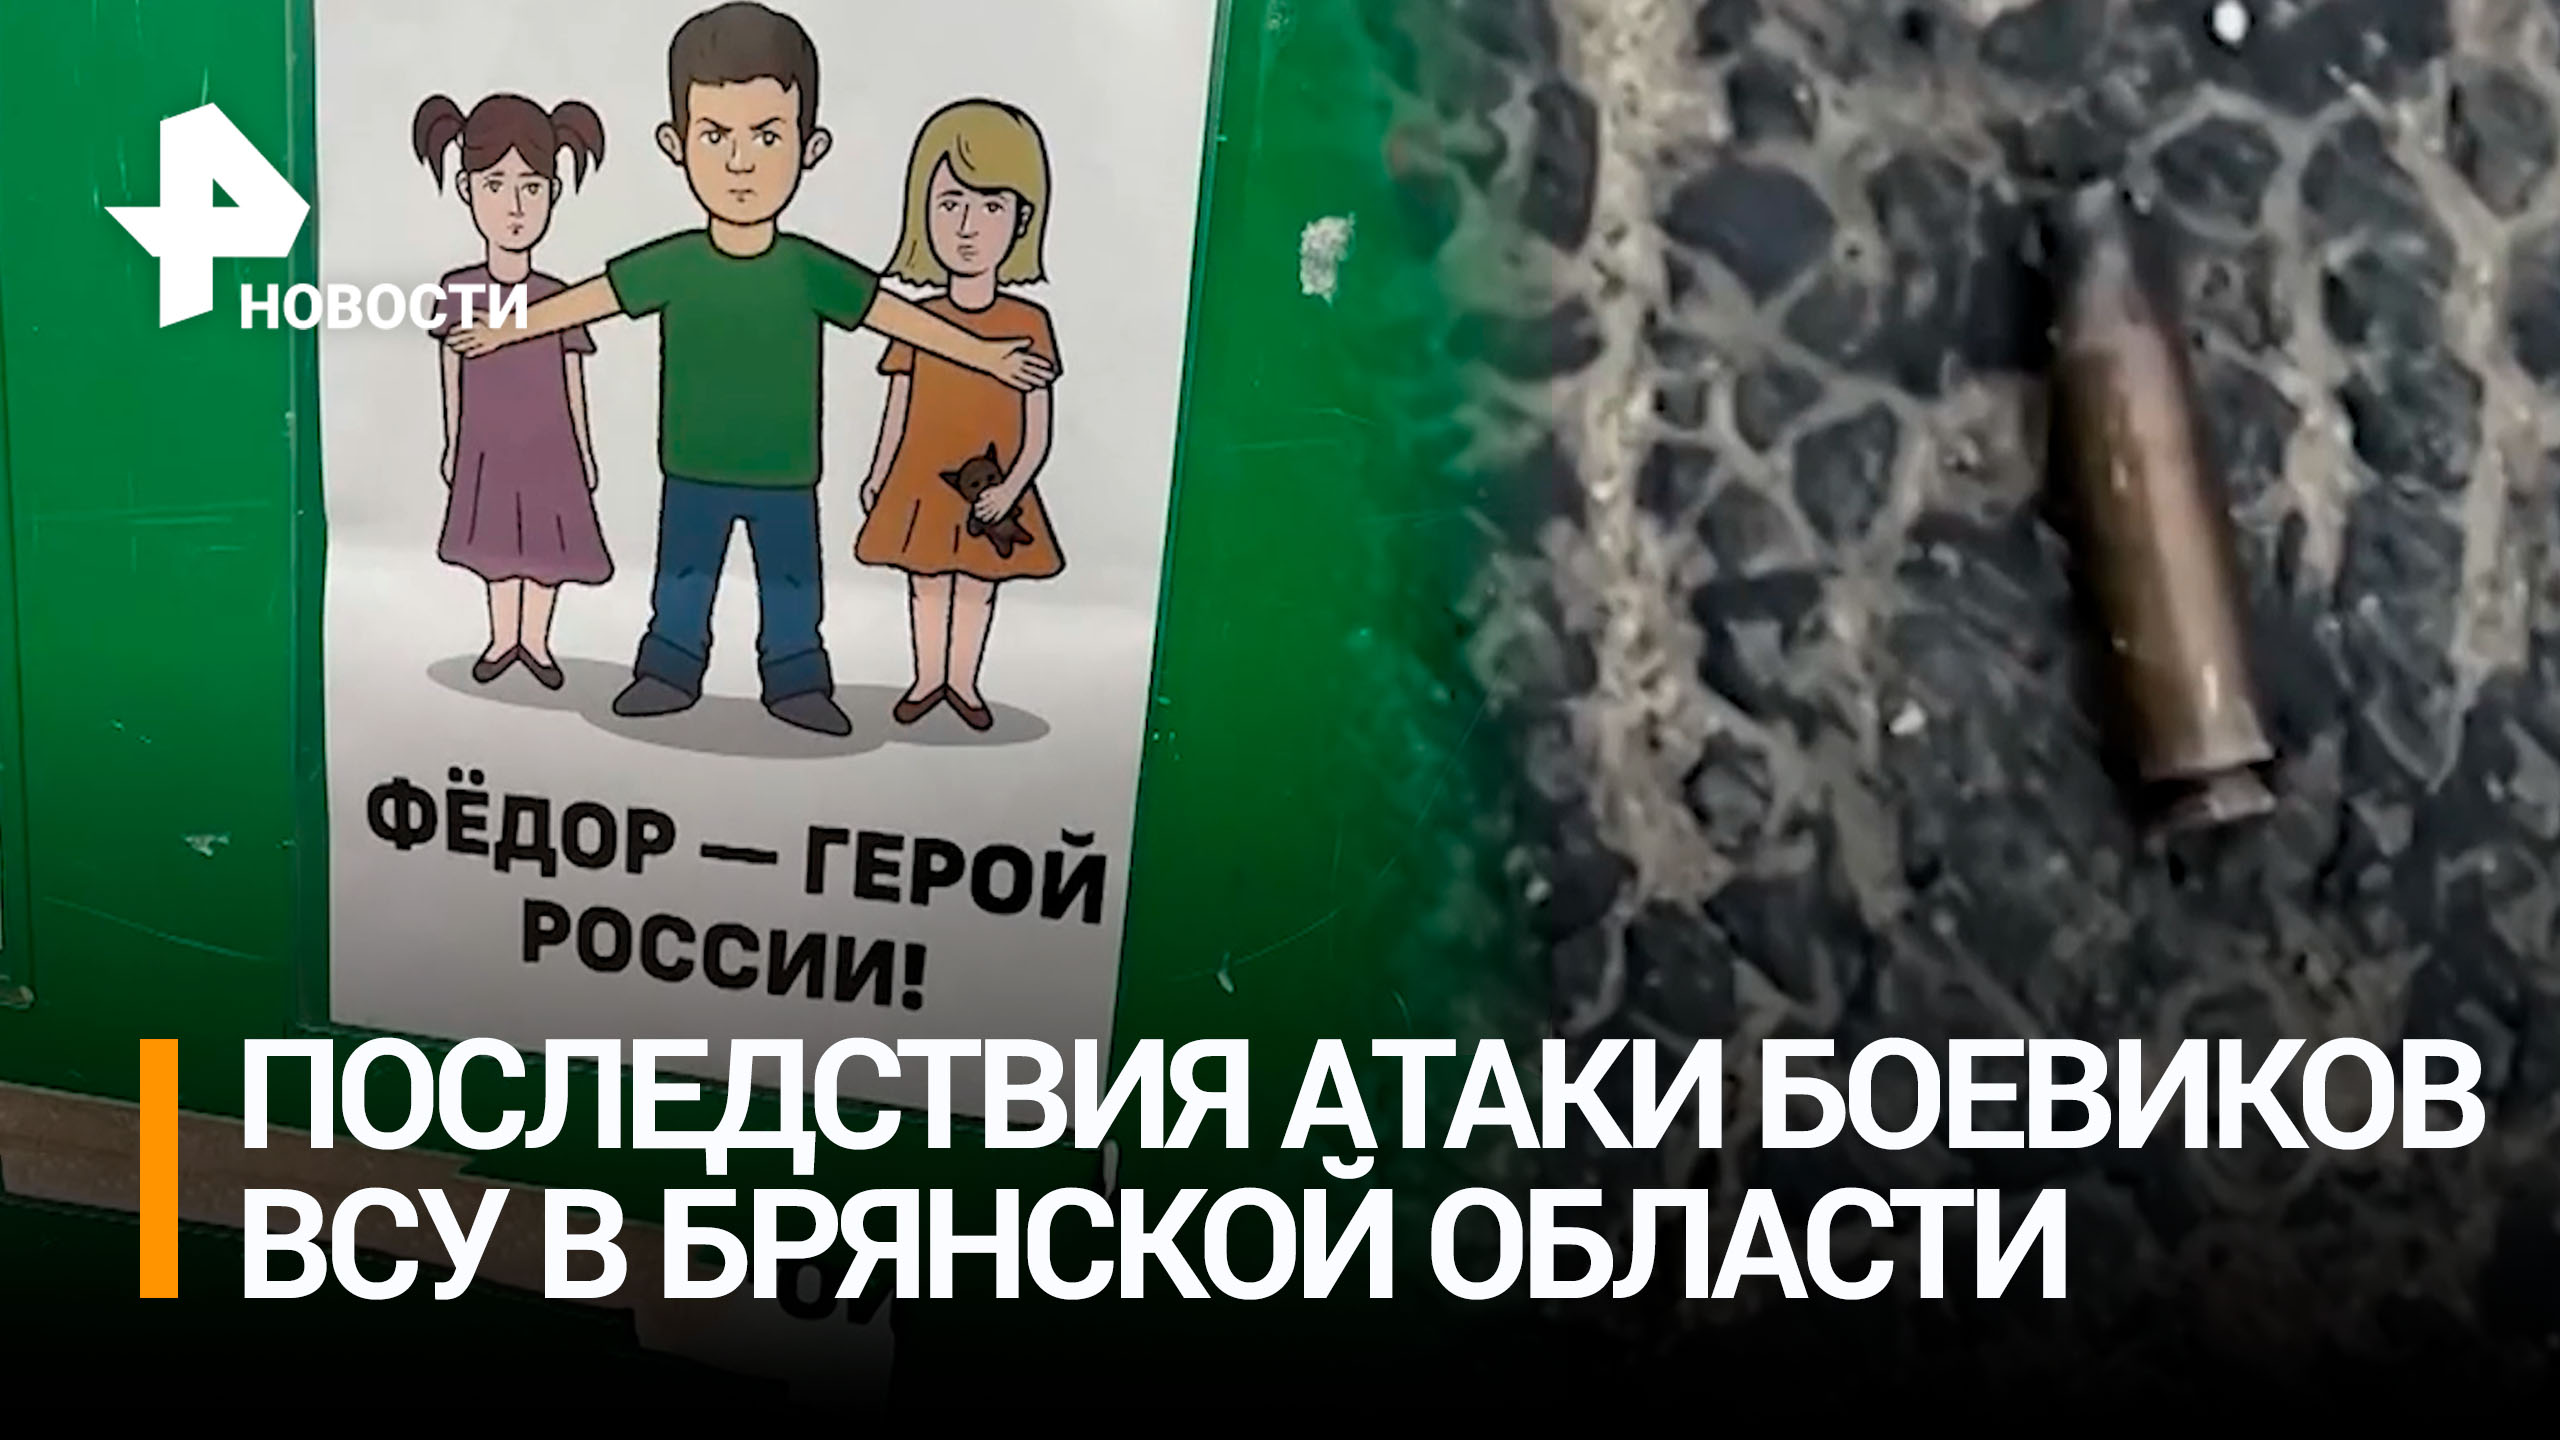 Наш герой: в Брянской области благодарят мальчика, спасшего школьниц / РЕН Новости